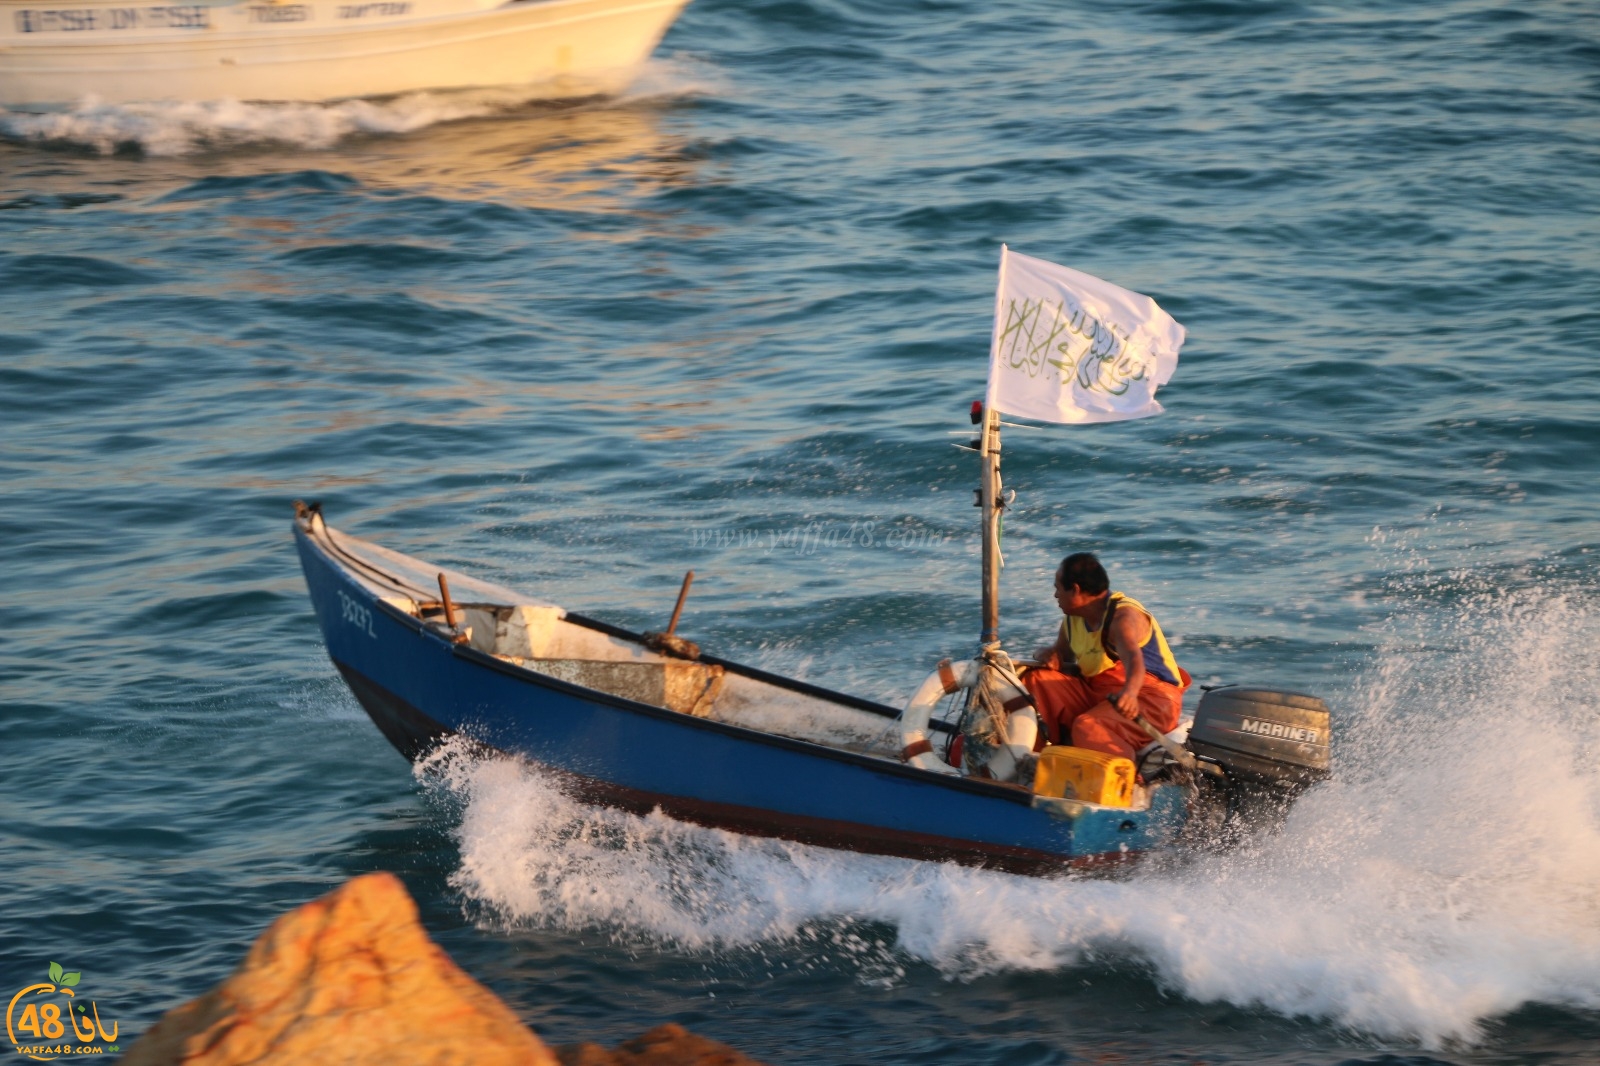  صور: صيادو مدينة يافا ينظمون استعراضاً بالقوارب مقابل متنزه العجمي أثناء صلاة العيد 